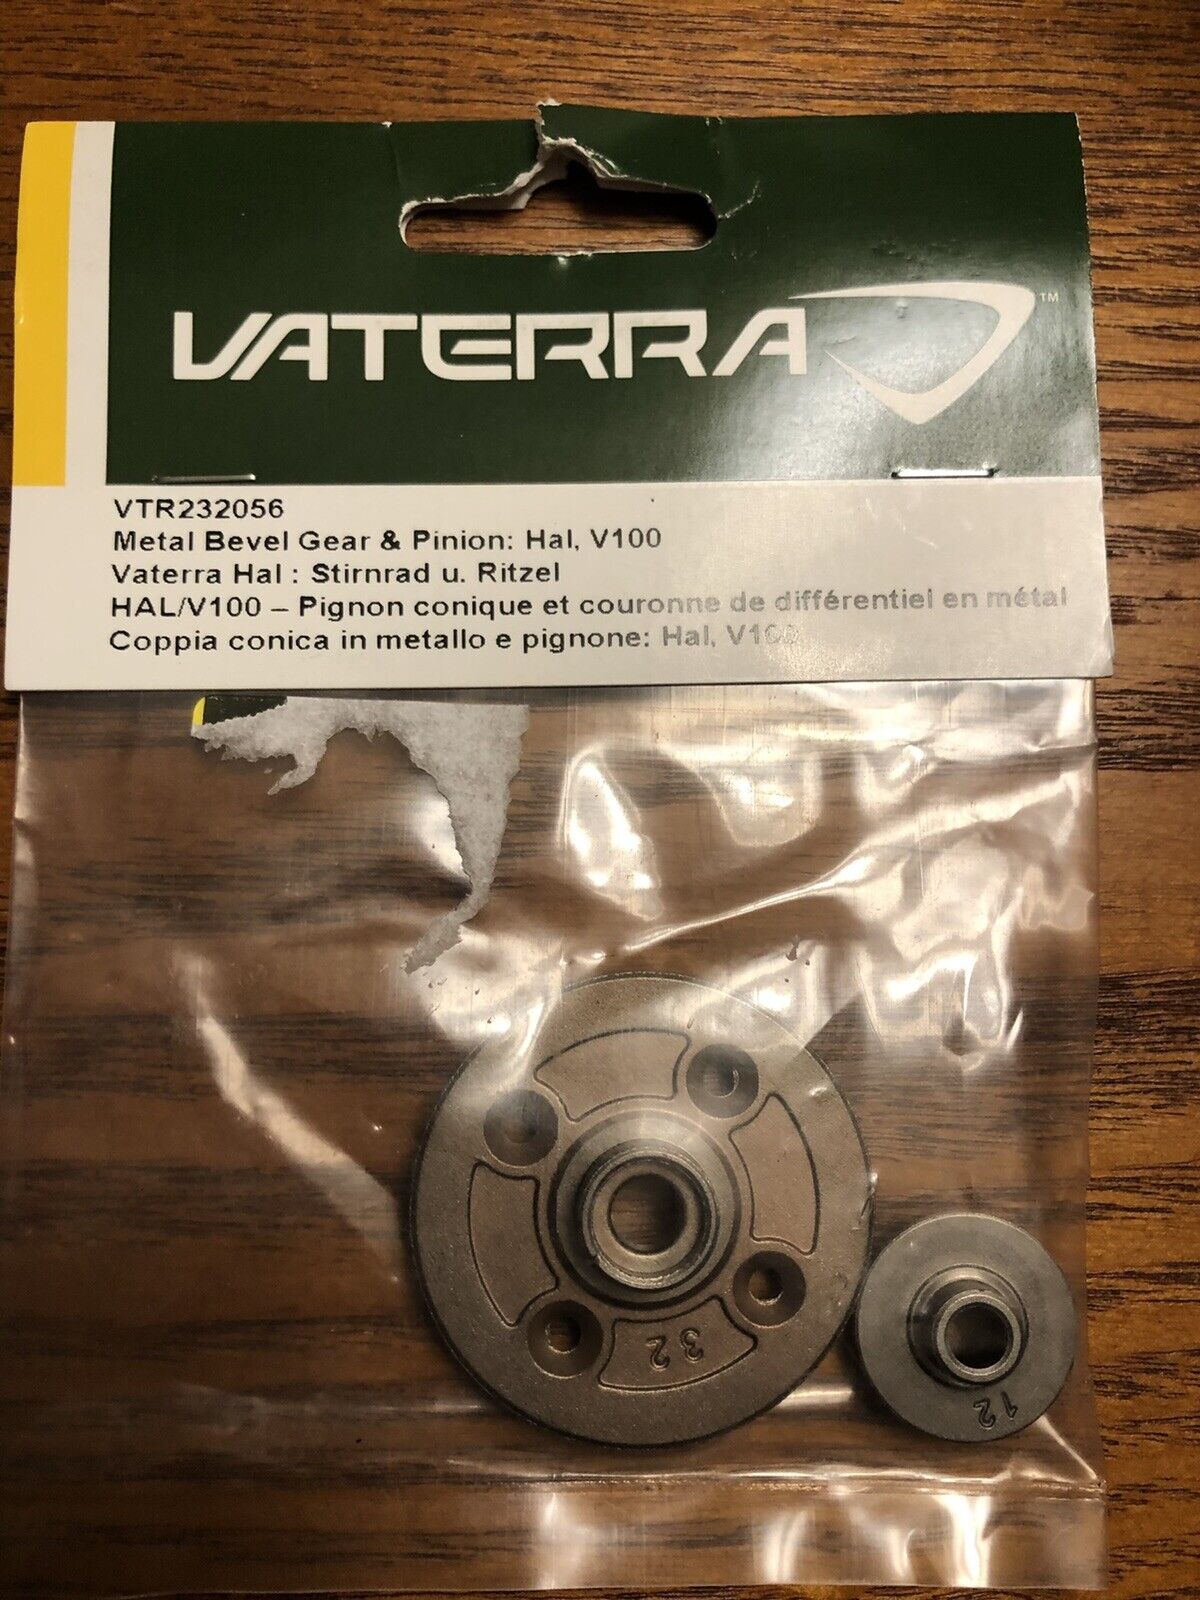 Vaterra # VTR232056   Metal Bevel Gear & Pinion: Hal, V100